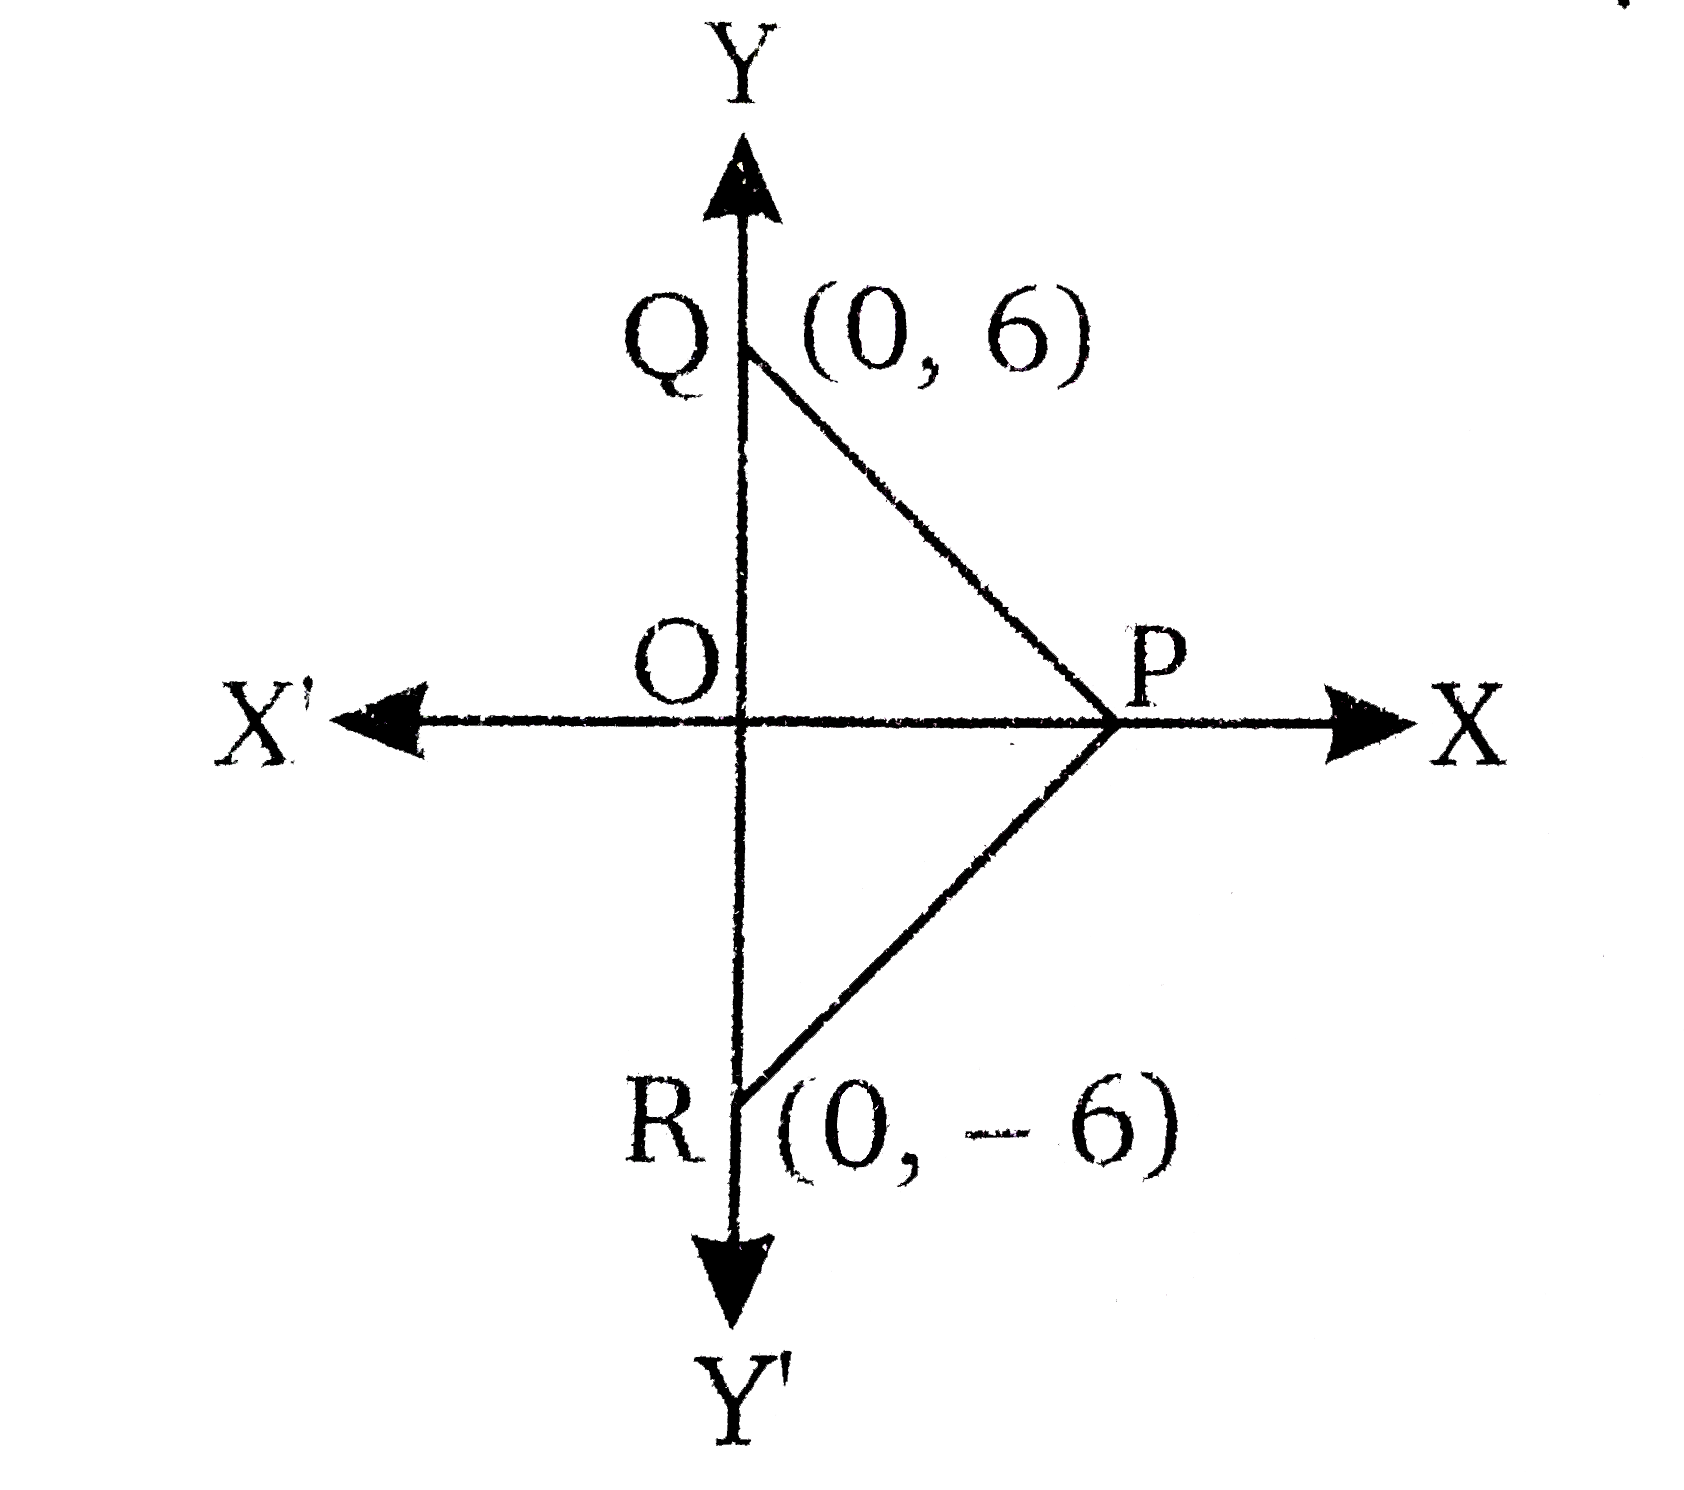 संलग्न चित्र में PQR एक समबाहु त्रिभुज है जिसके बिंदु Q व R के निर्देशांक  क्रमश: (0,6) व (0,-6)  है। शीर्ष P के निर्देशांक  ज्ञात कीजिए।